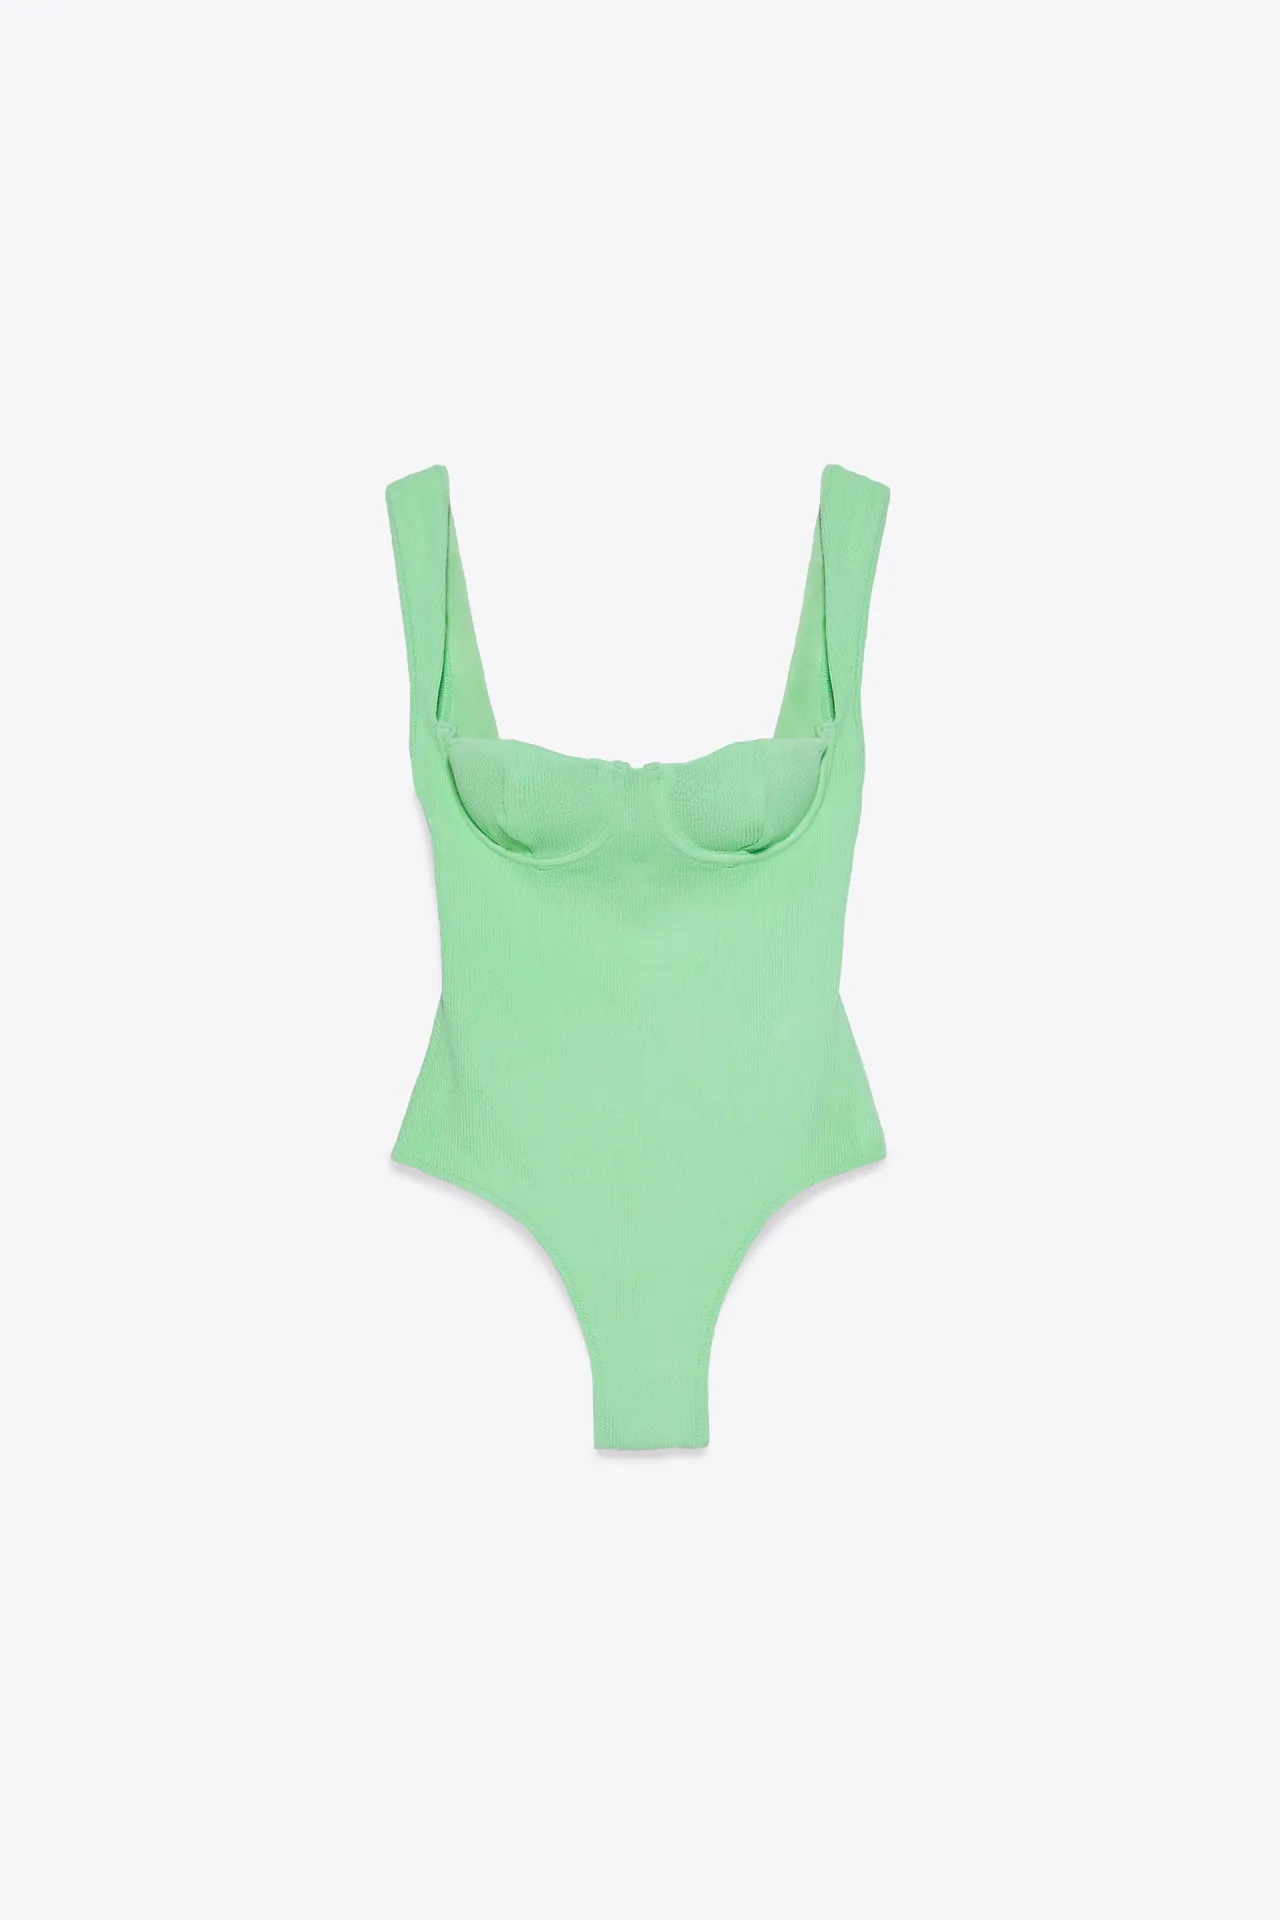 Este es el bañador verde de Zara que estiliza la figura y resalta el pecho, que puedes usar como body